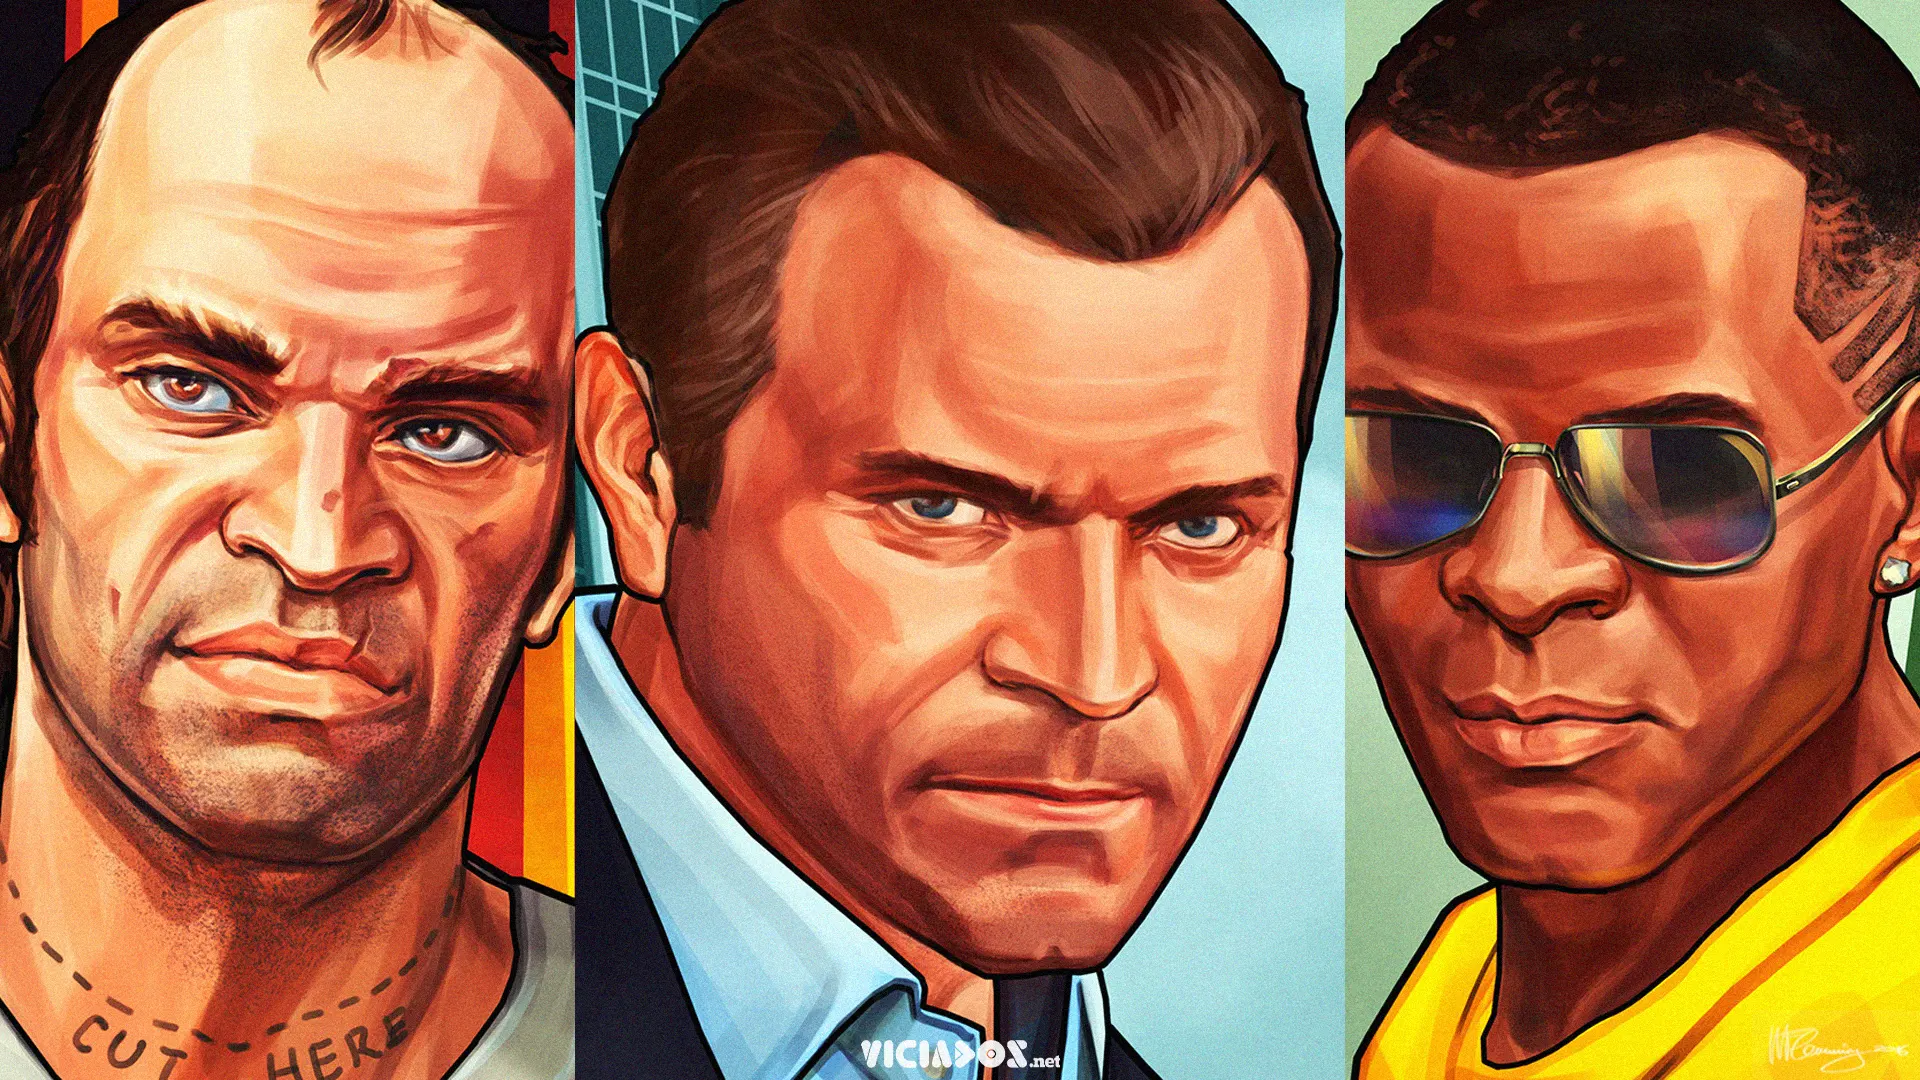 GTA Online | Próxima DLC pode reunir protagonistas de Grand Theft Auto V 1